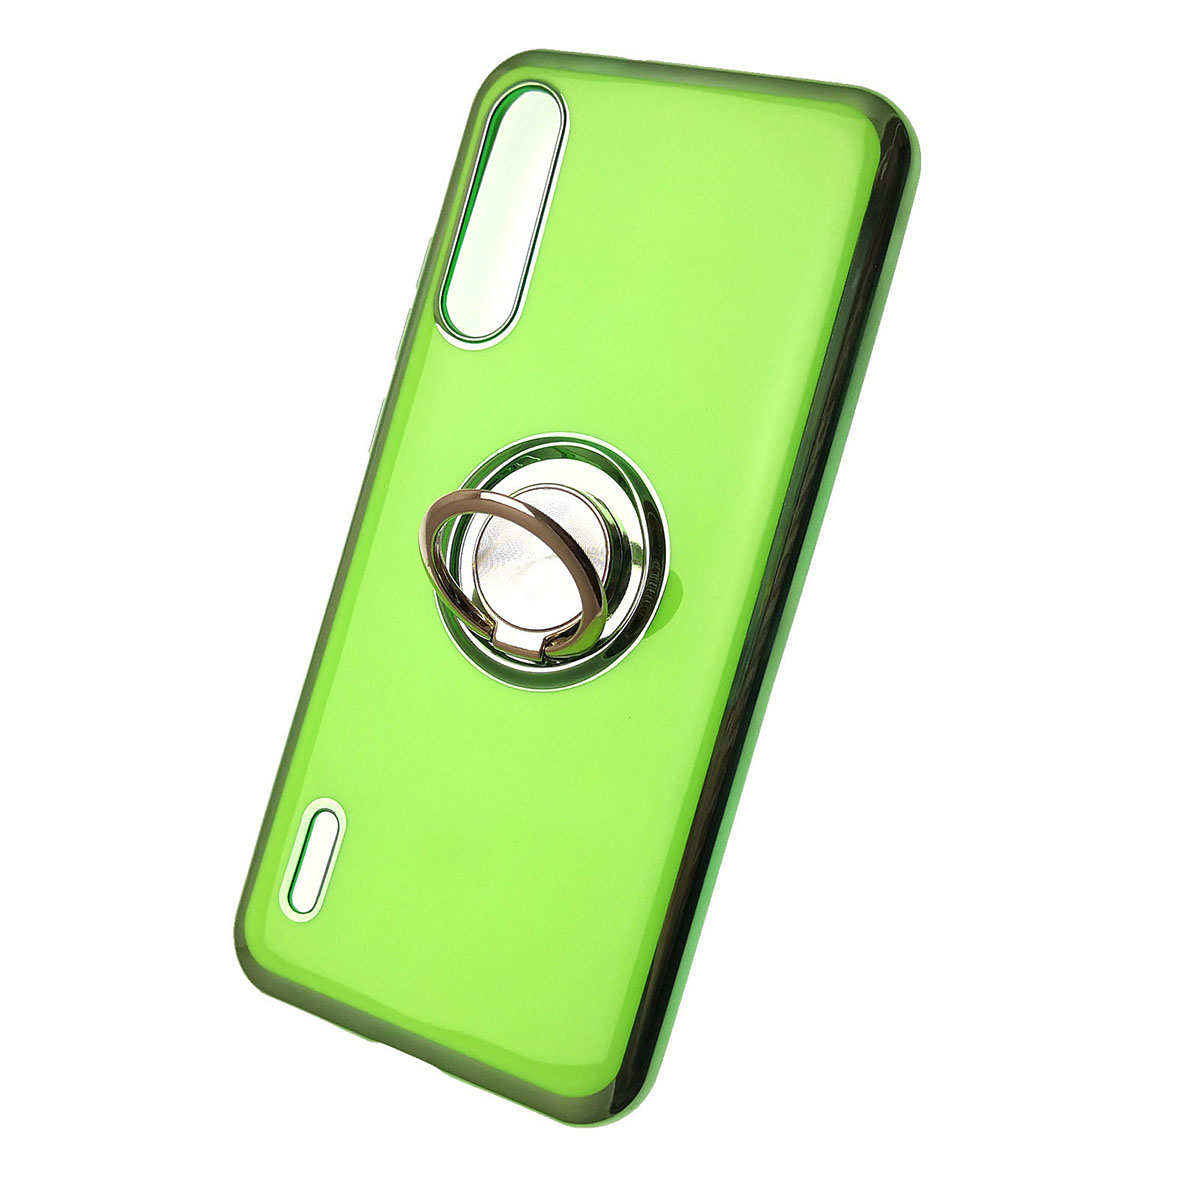 Чехол накладка для XIAOMI Mi A3, Mi CC9E, силикон, кольцо держатель, цвет зеленый.